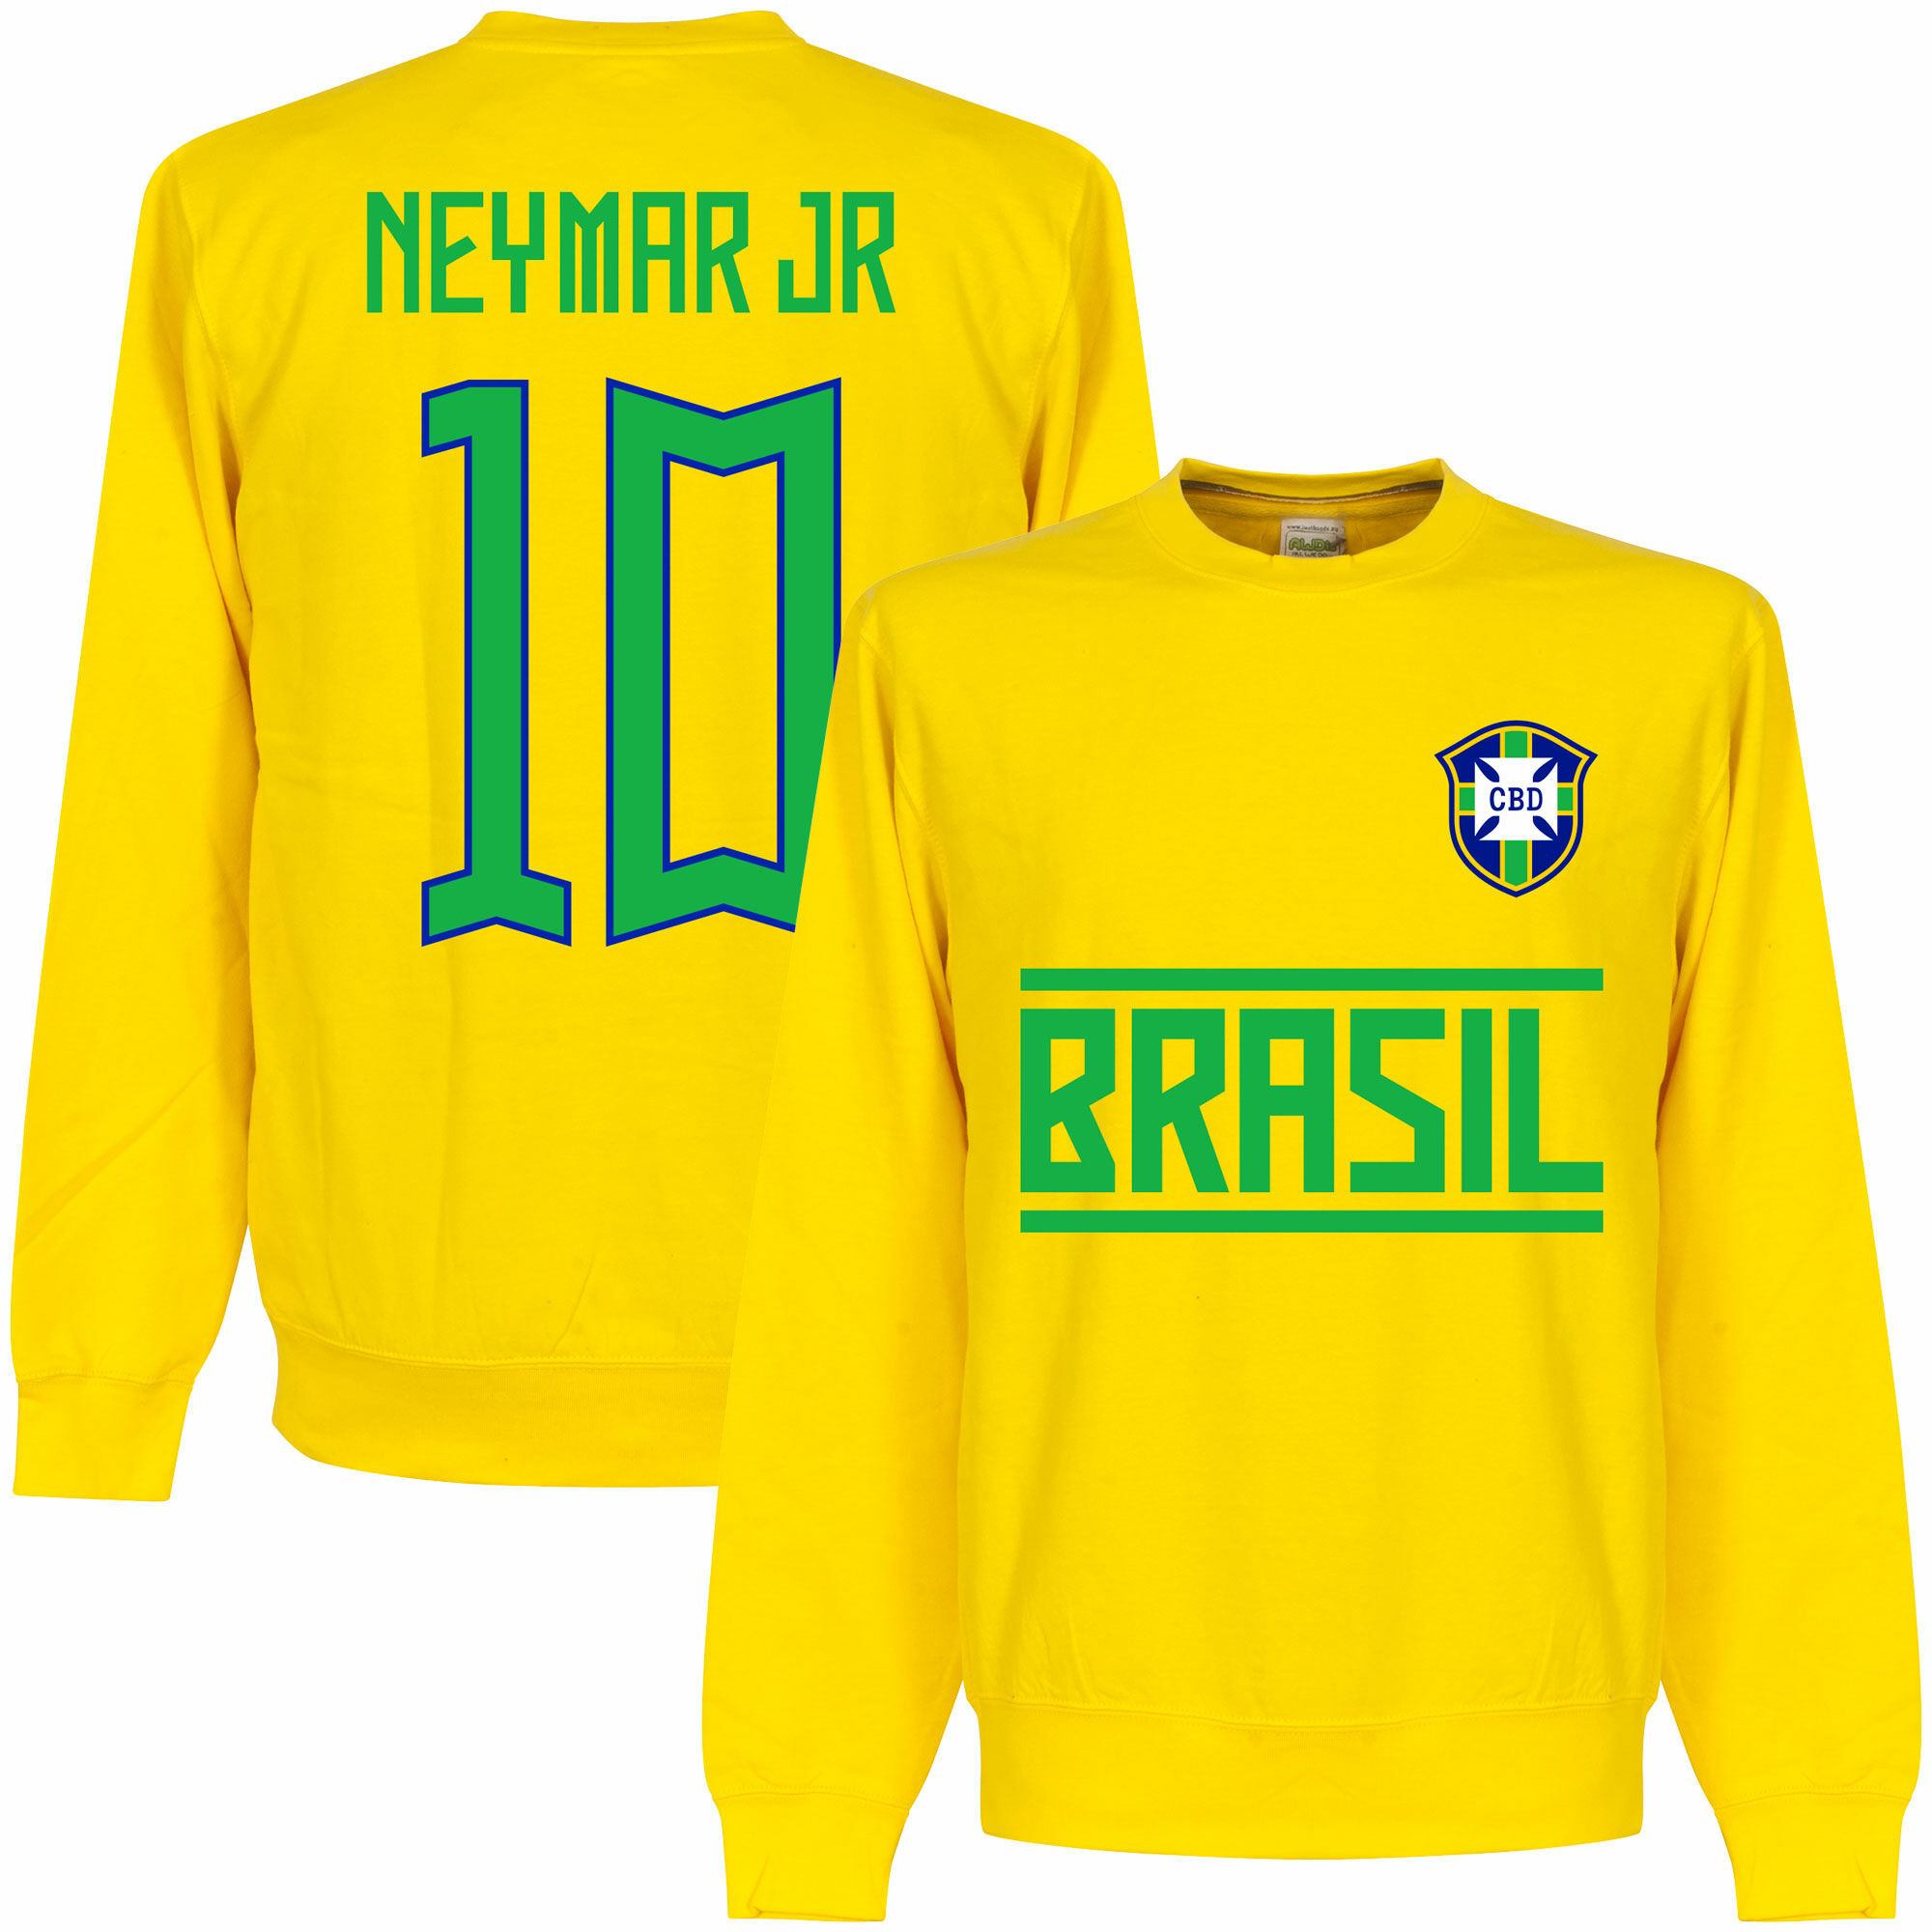 Brazílie - Mikina - číslo 10, Neymar, žlutá